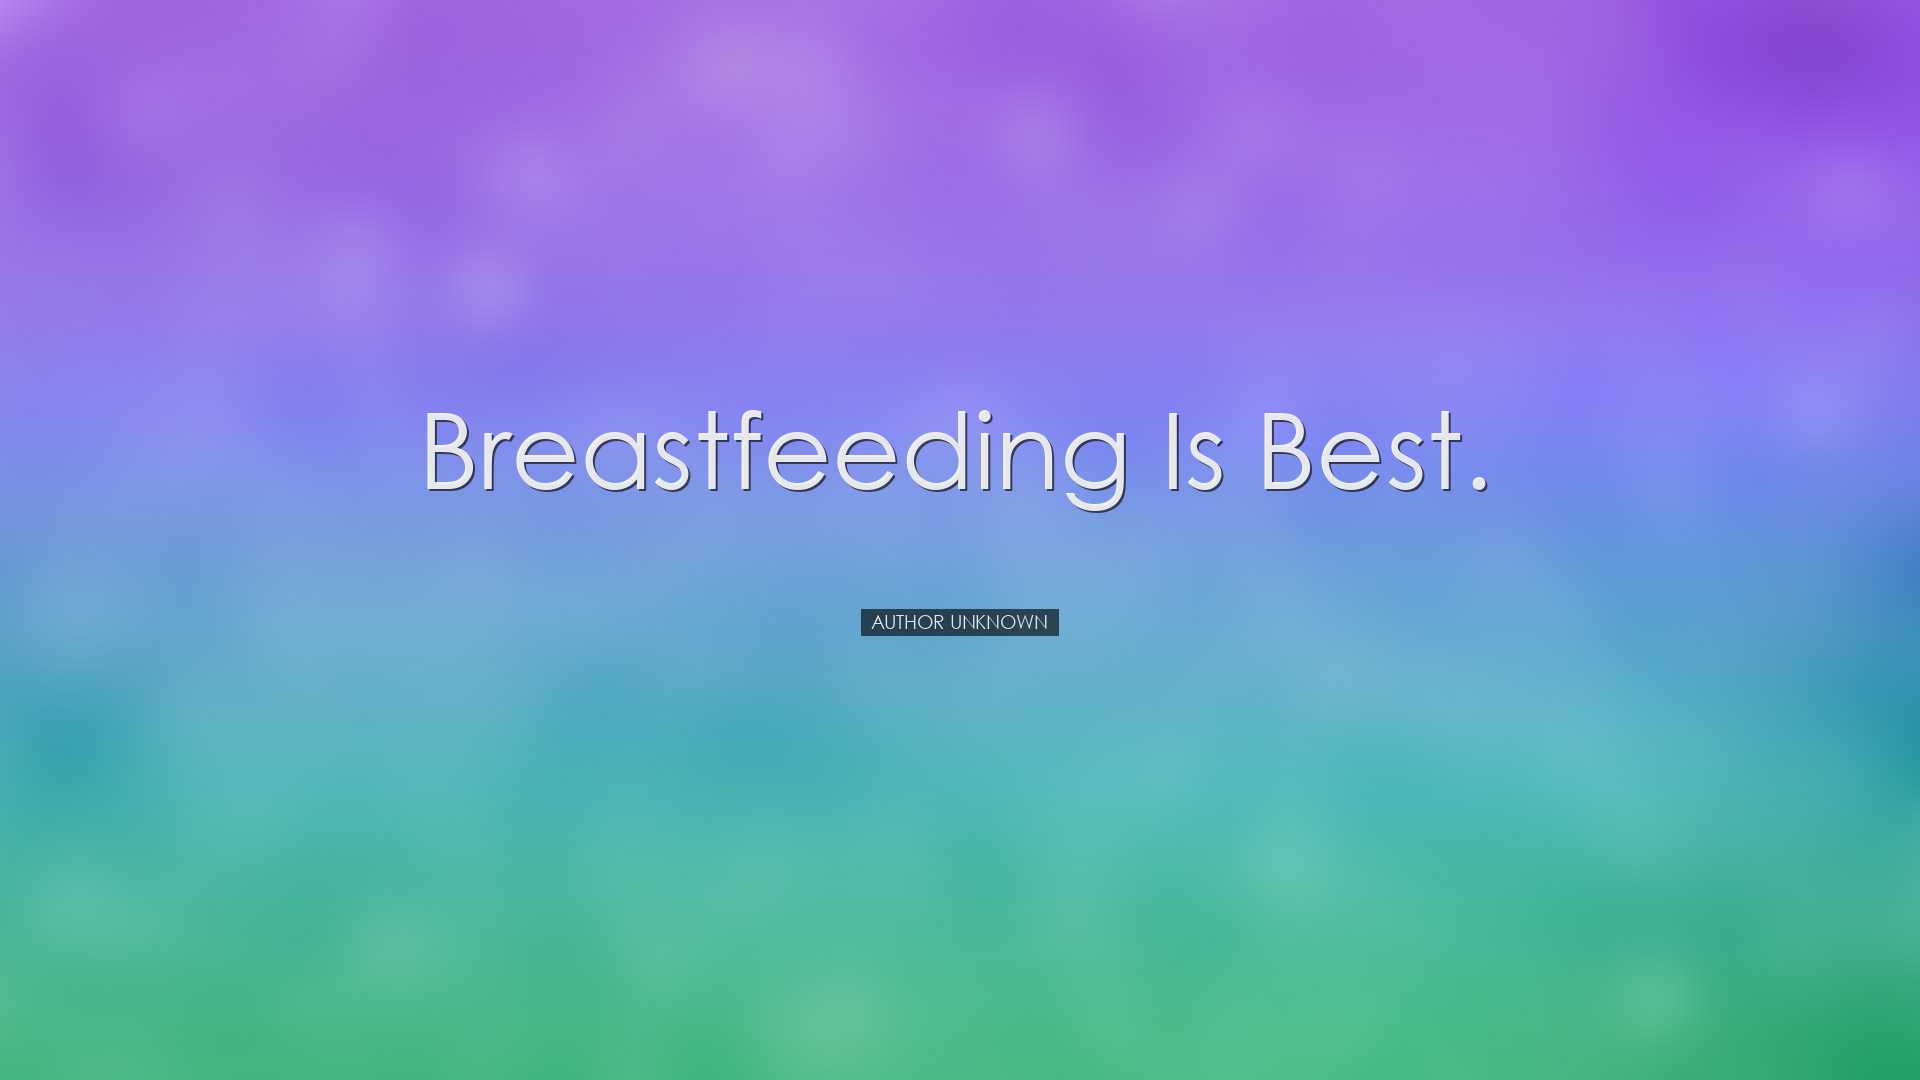 Breastfeeding is best. - Author Unknown